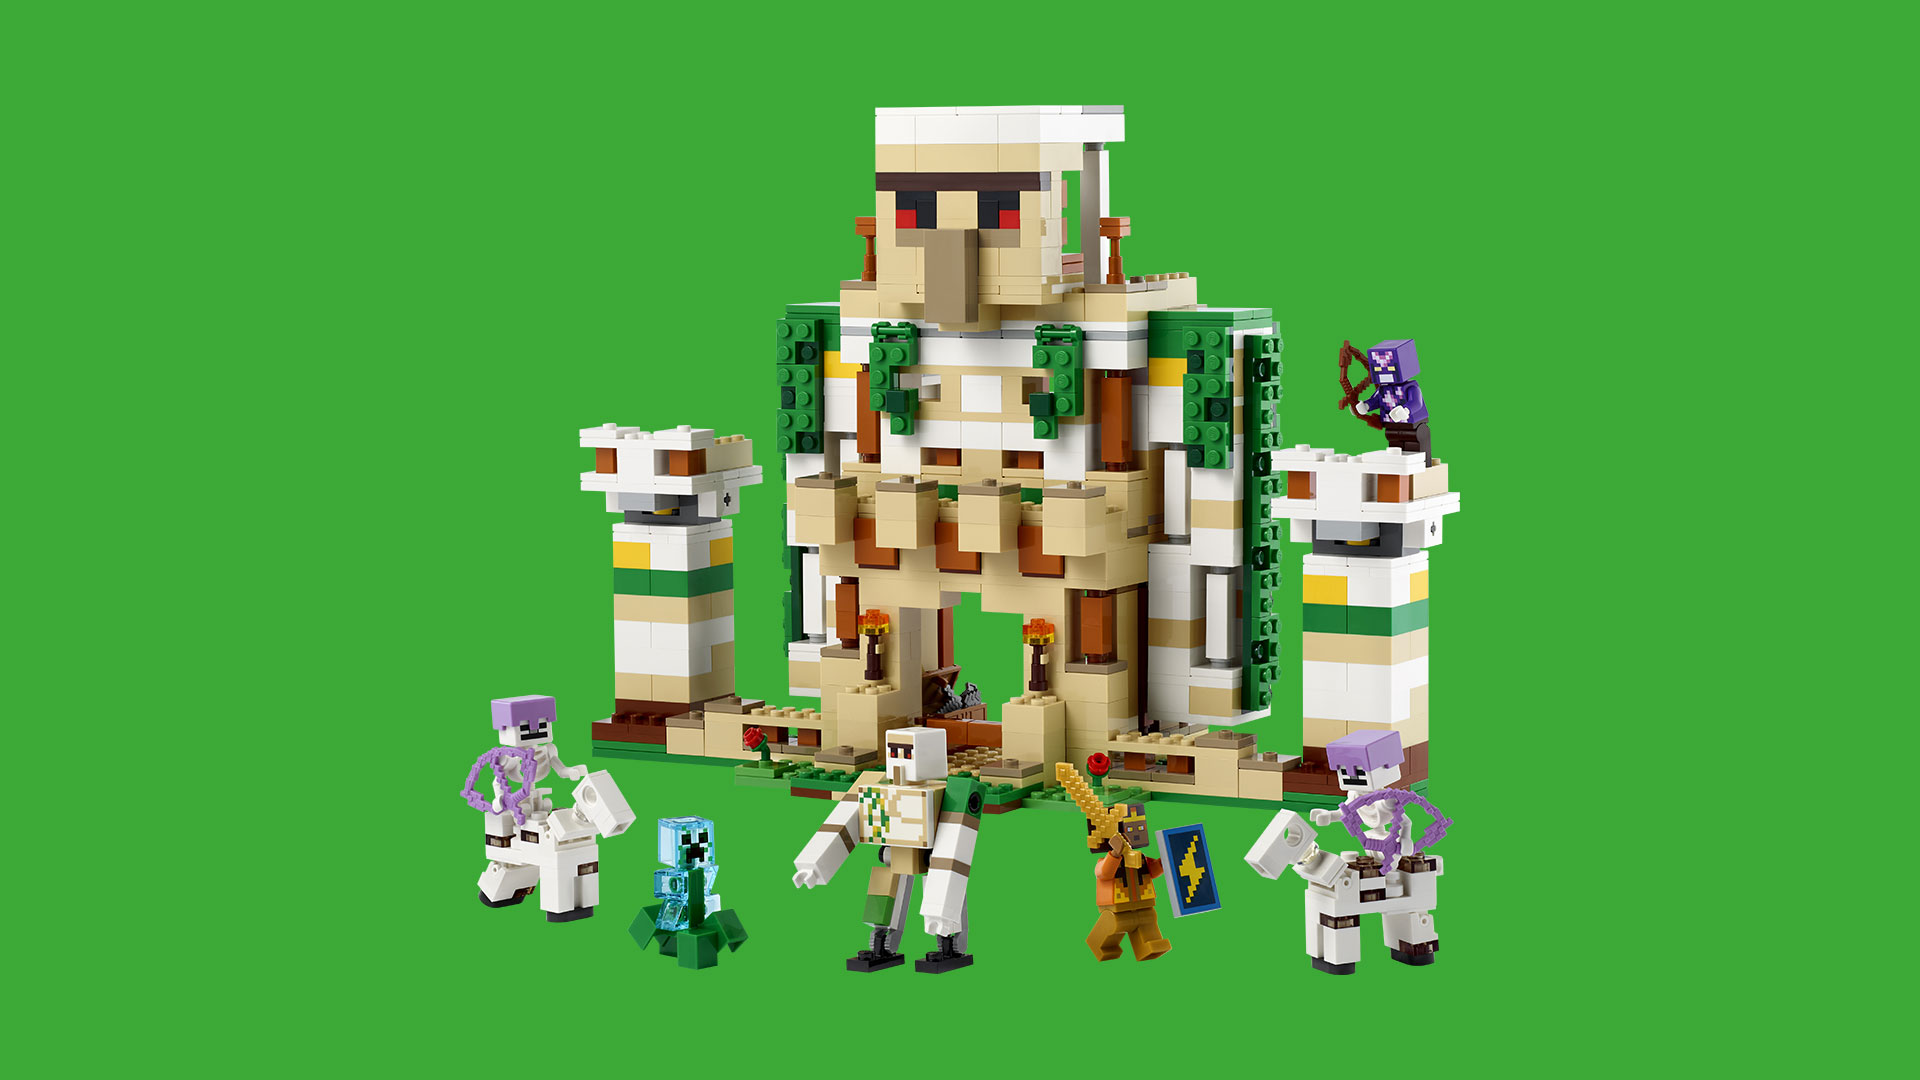 Vrhněte se do kostičkovaného dobrodružství s novými stavebnicemi LEGO Minecraft ilustrace1 LEGO MC